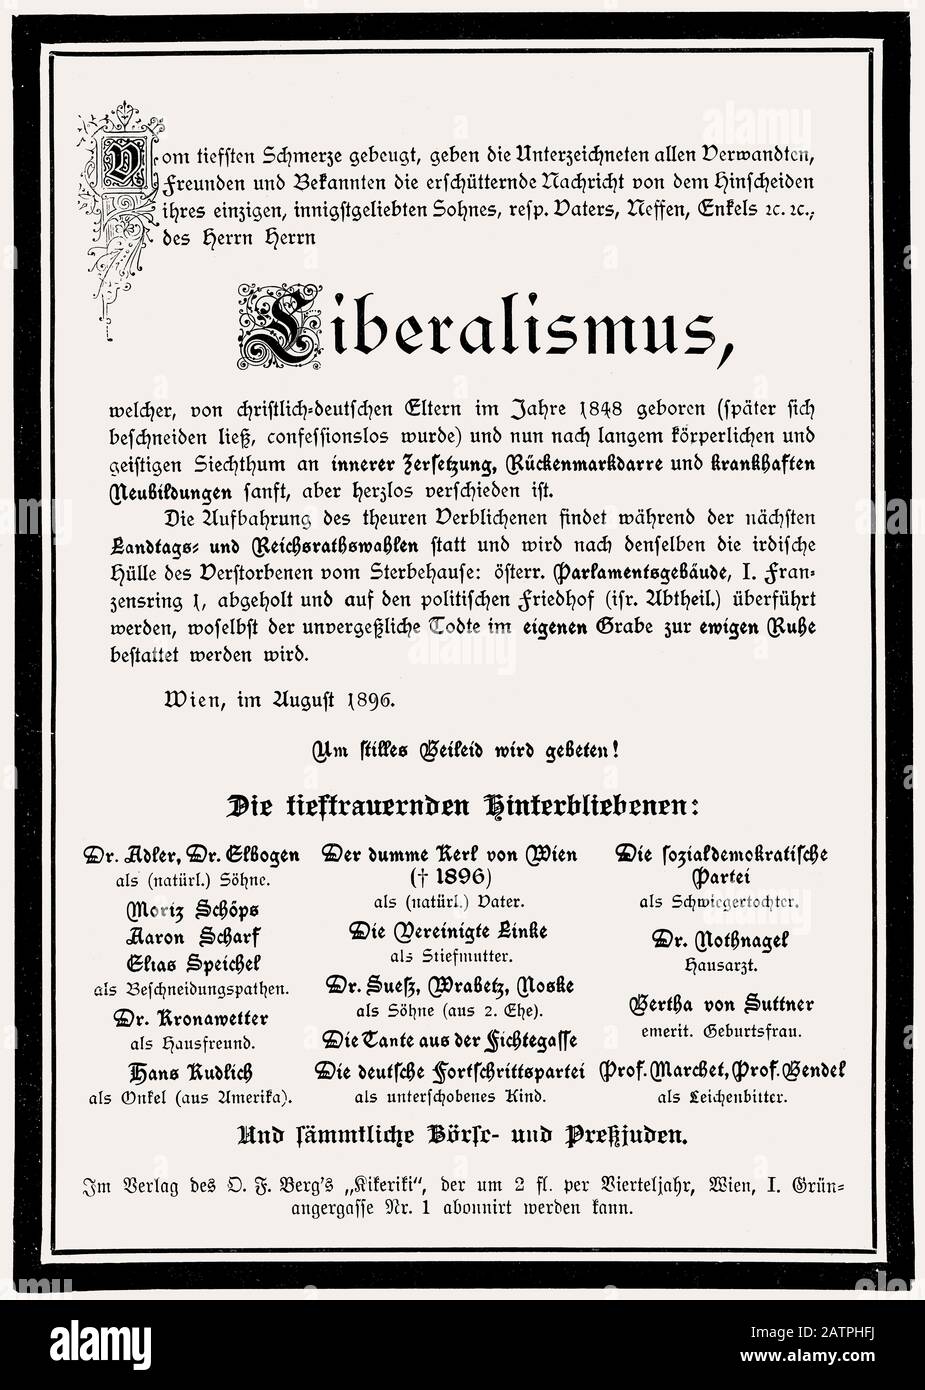 Un necrario satirico sulla morte del liberalismo da parte del Partito sociale cristiano, Austria, 1886 Foto Stock